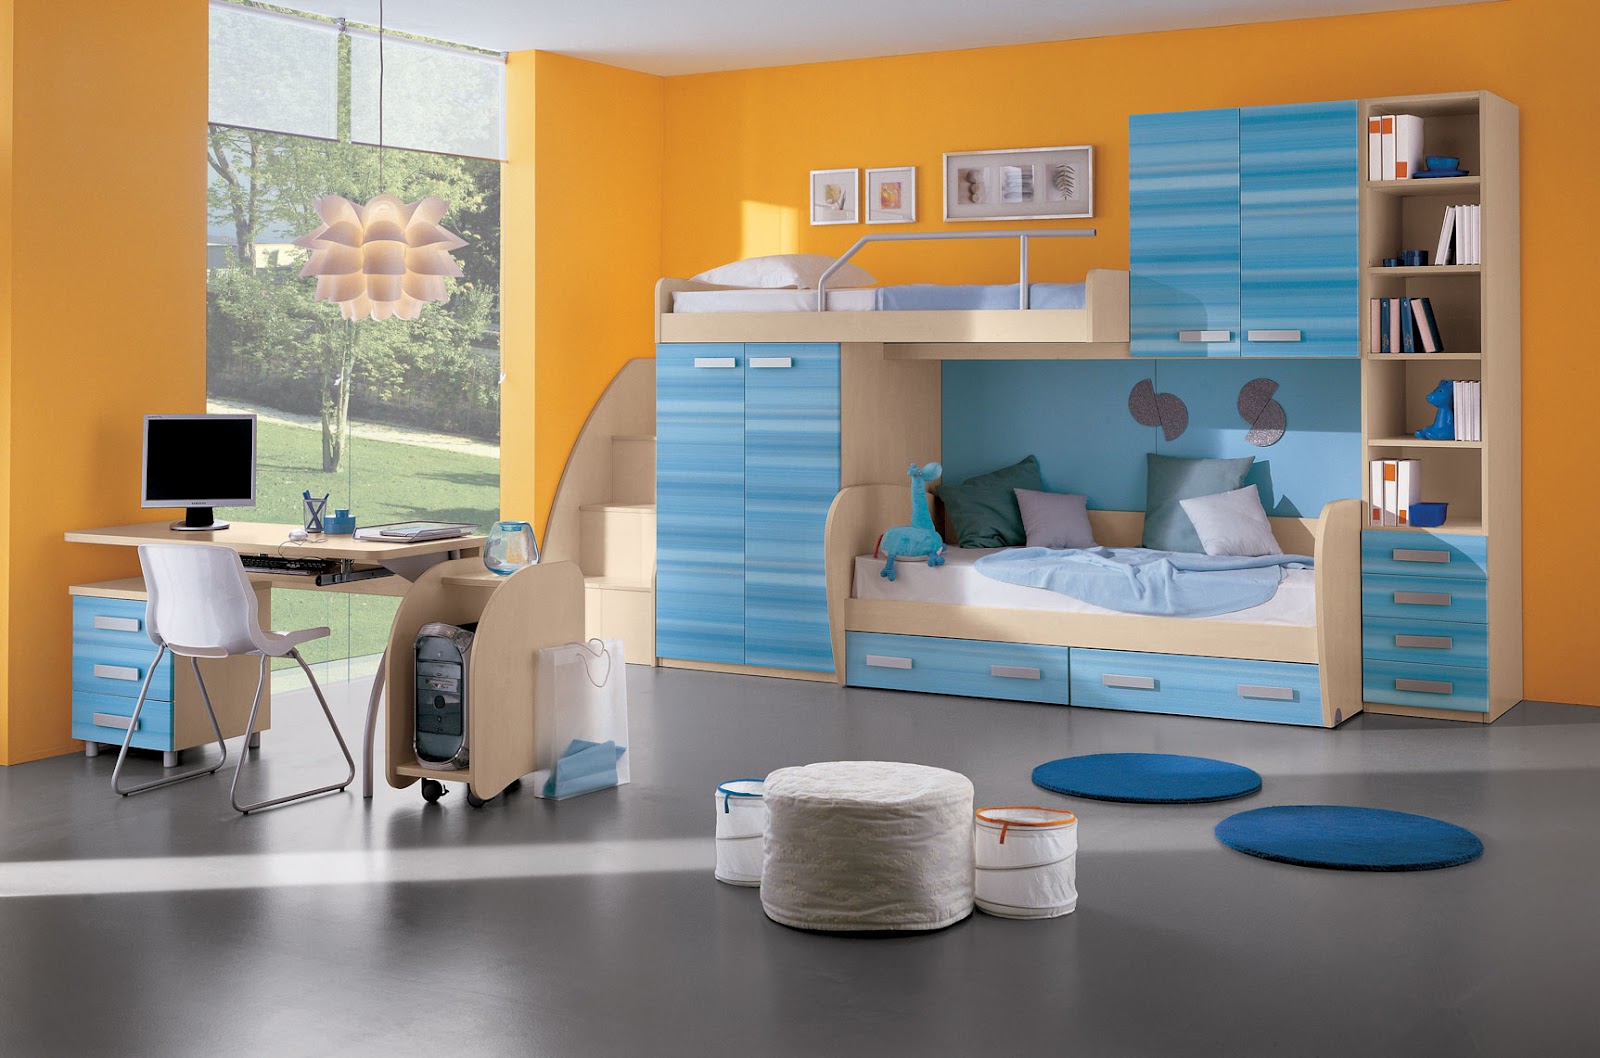 https://blogger.googleusercontent.com/img/b/R29vZ2xl/AVvXsEhTANjbjGH8Z_q_2fEsSNZlPCLNq136OCIgJb0tZUbED6QRzsBYF8ryucz76uzangj3KoLAk166xktMjcj1Qx7X6hu9PN3WyA0EBsebjIarfLFLYczR4lF5620EIpkbBStditGbowQAn2k/s1600/Kids-Room-Best-Home-Interior-Designs.jpg